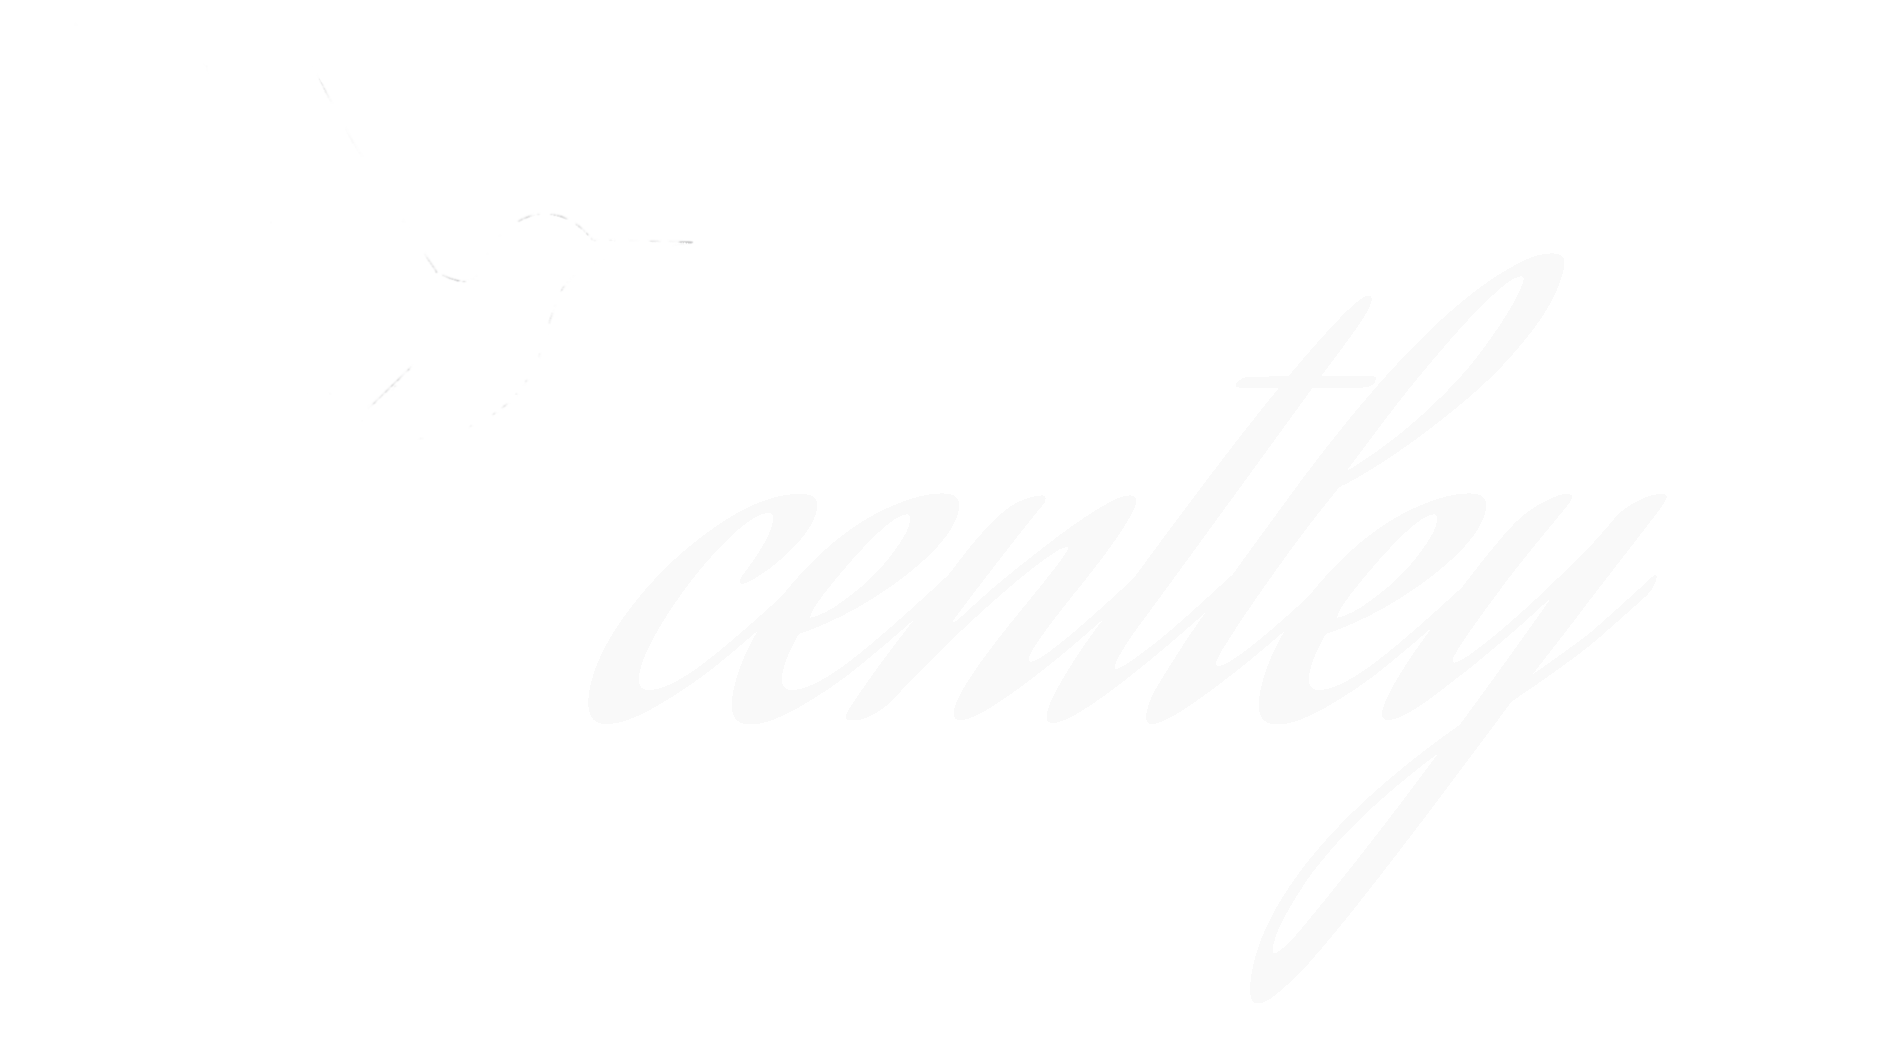 Scentley